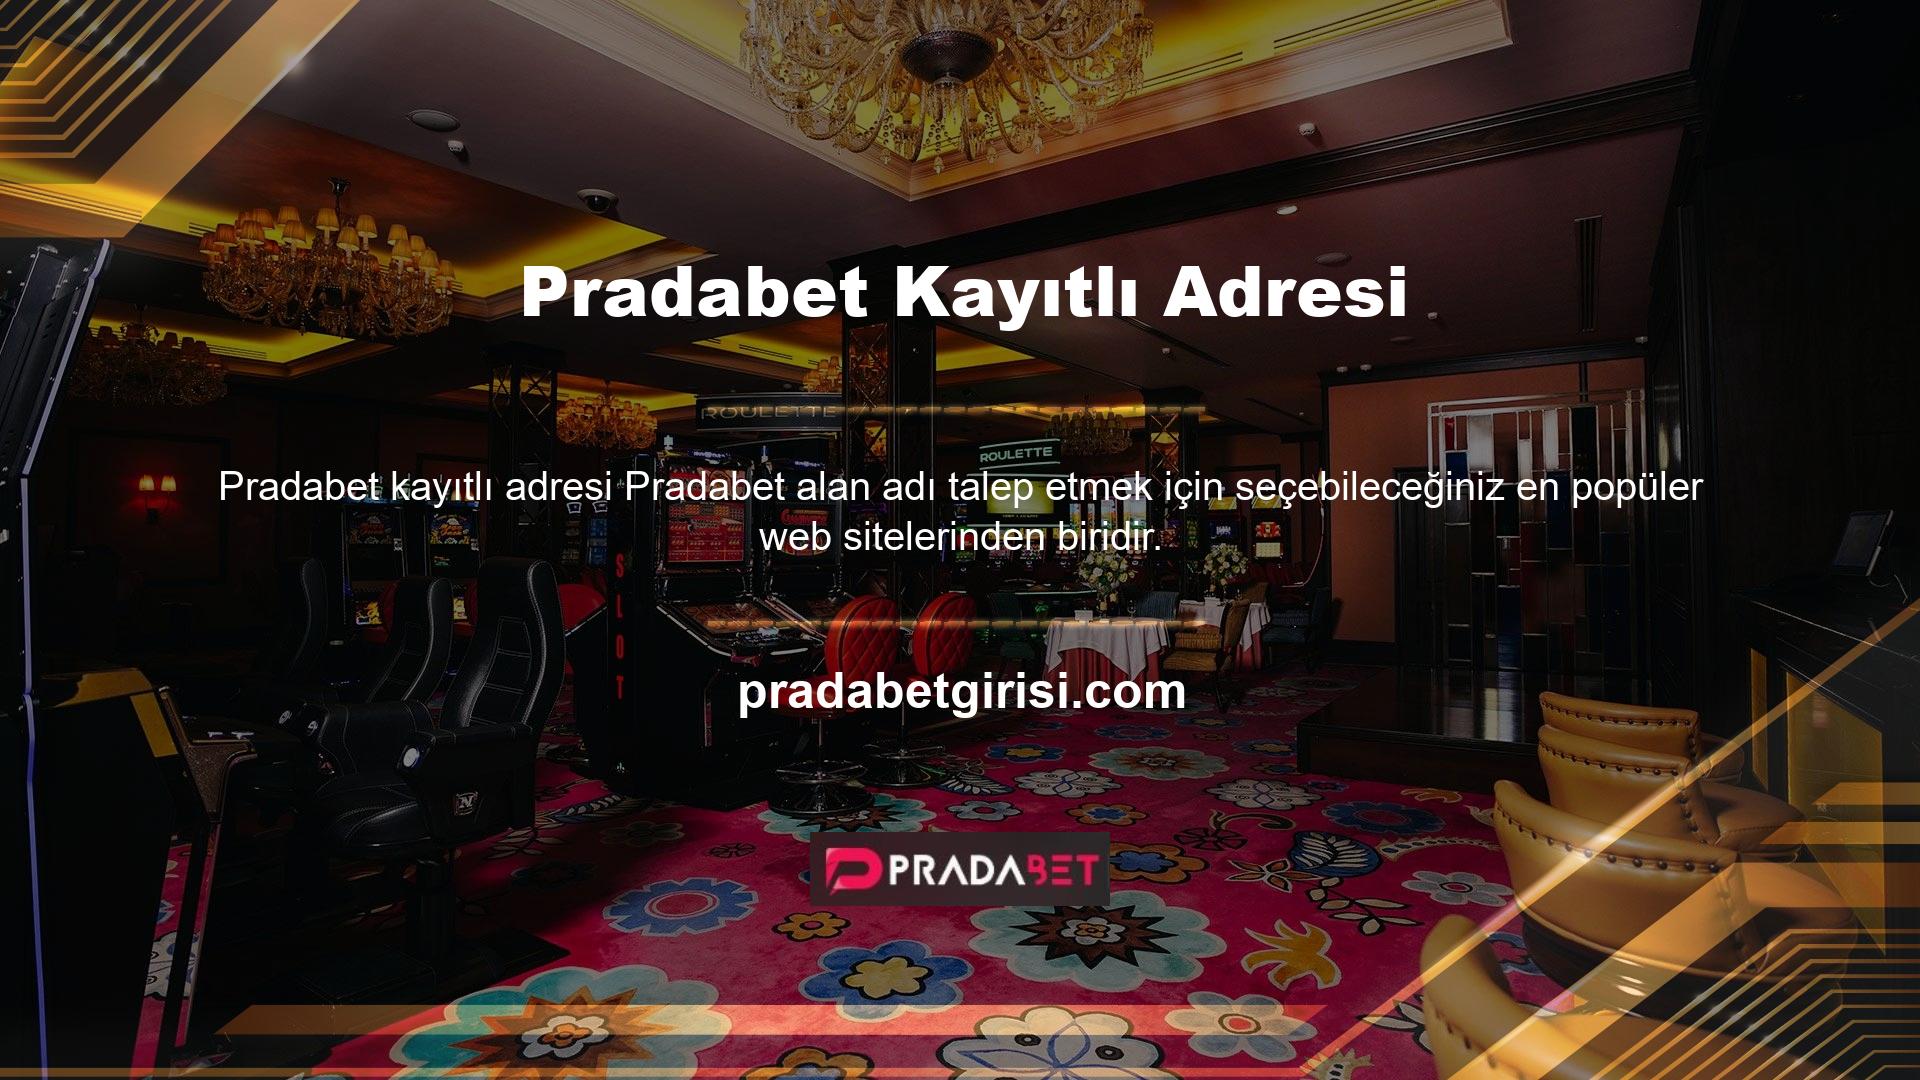 Pradabet, Avrupa'nın en çok kullanılan, tavsiye edilen ve lisanslı casino hizmet sitelerinden biridir